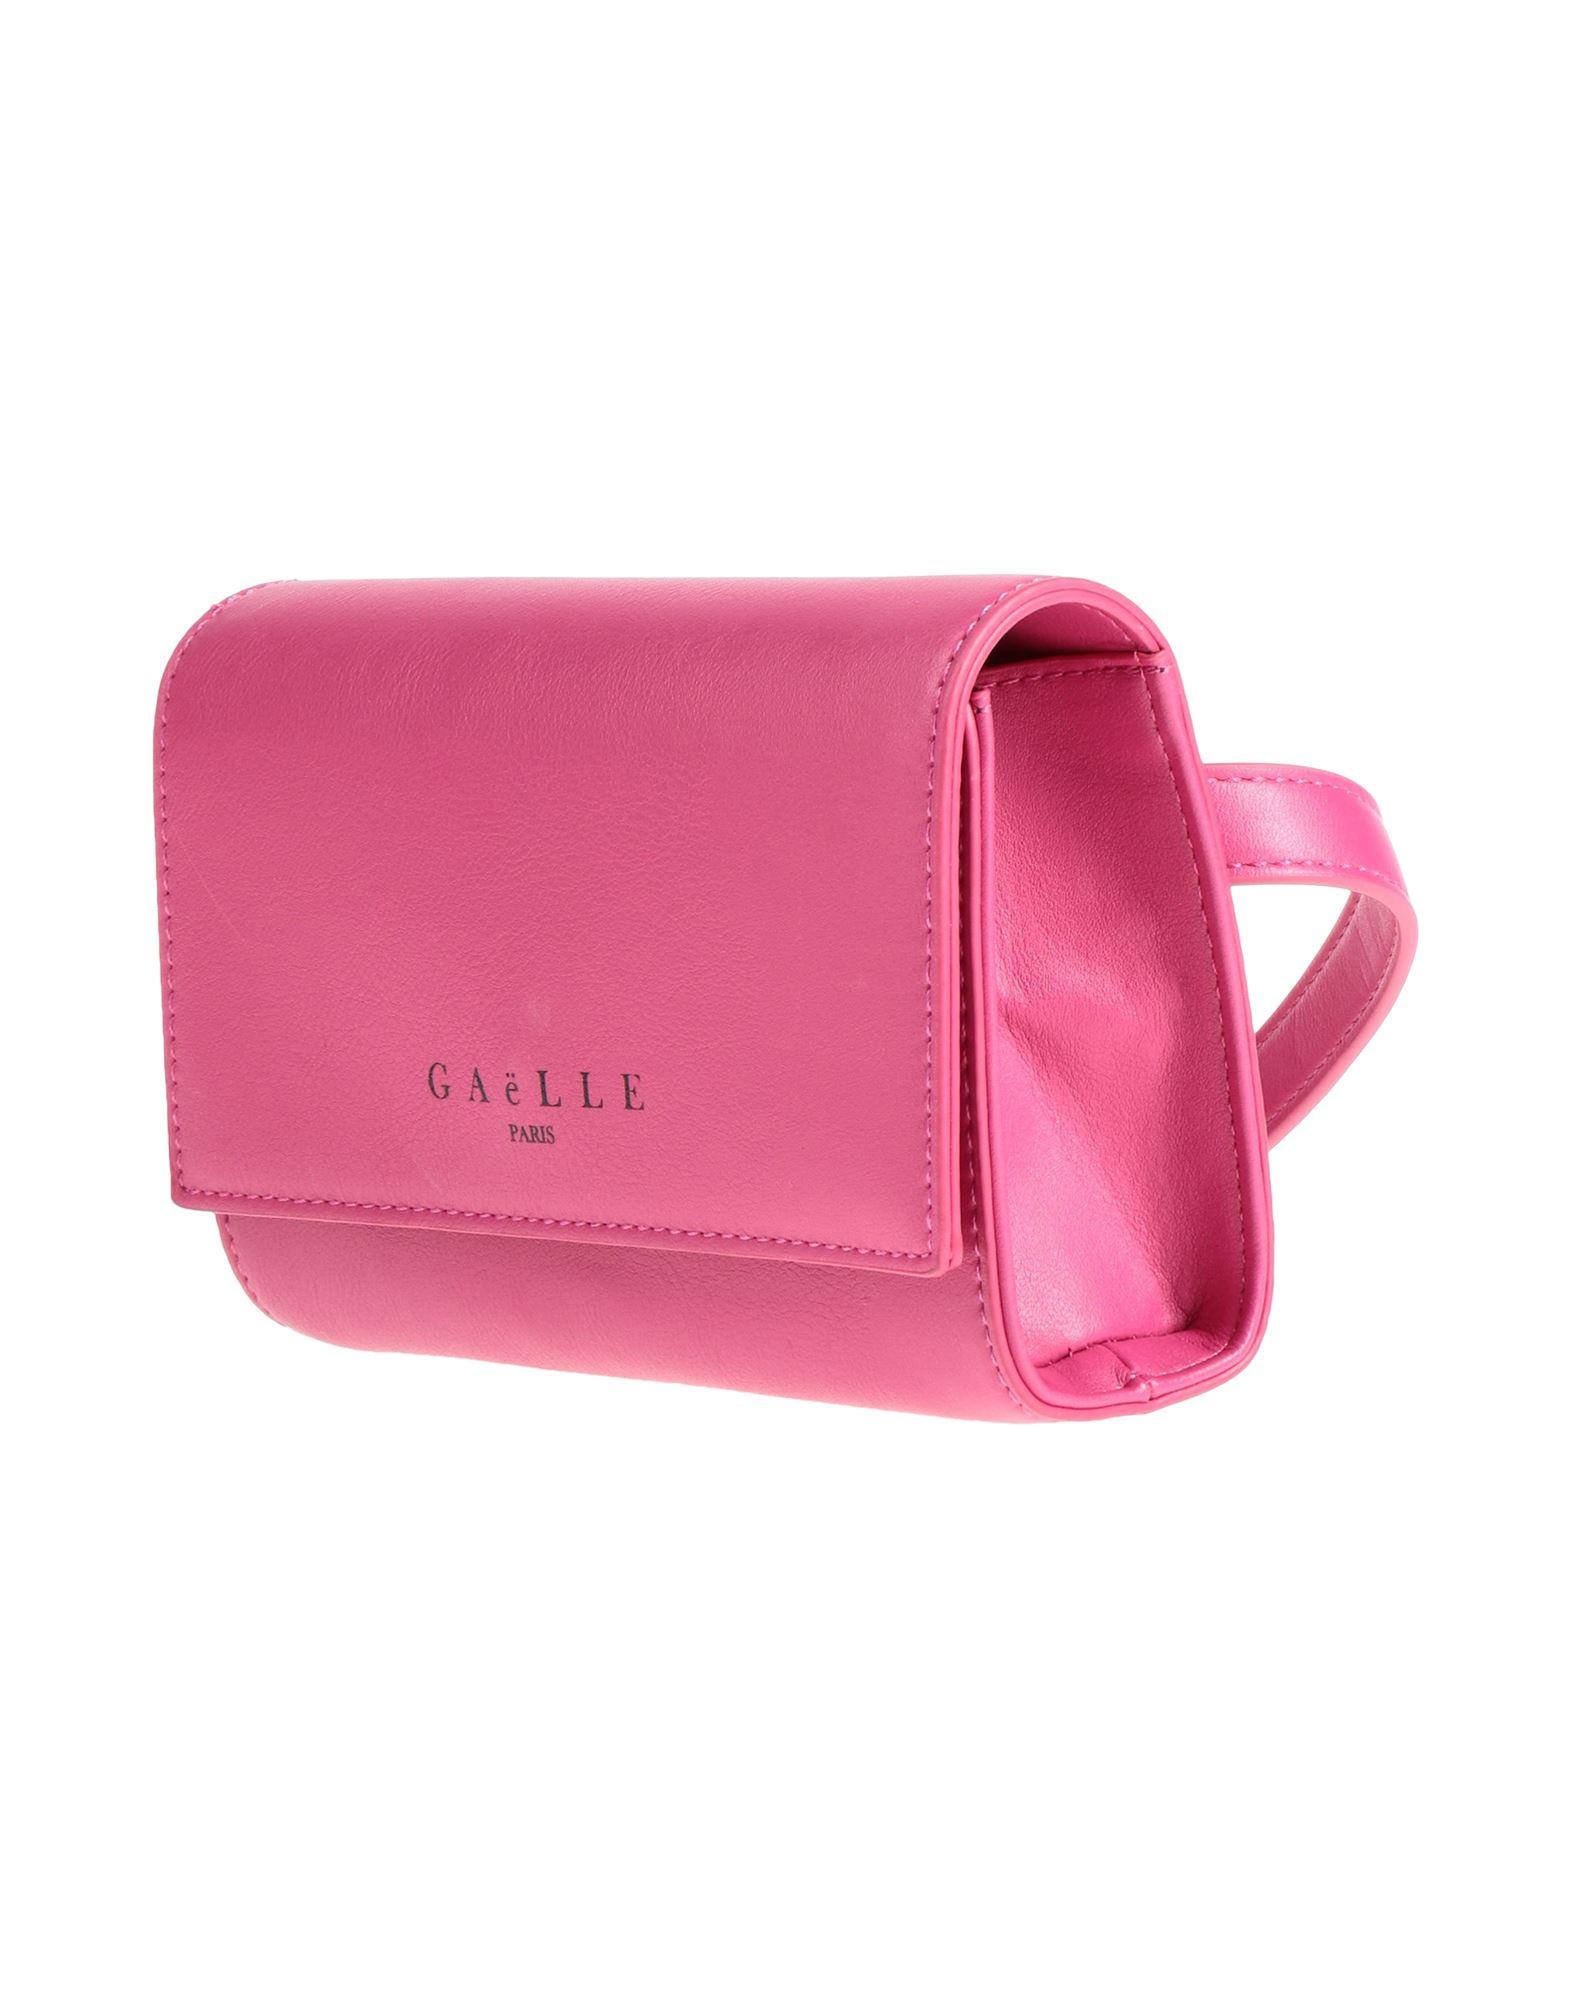 Gaelle Paris Bum Bag in Pink | Lyst